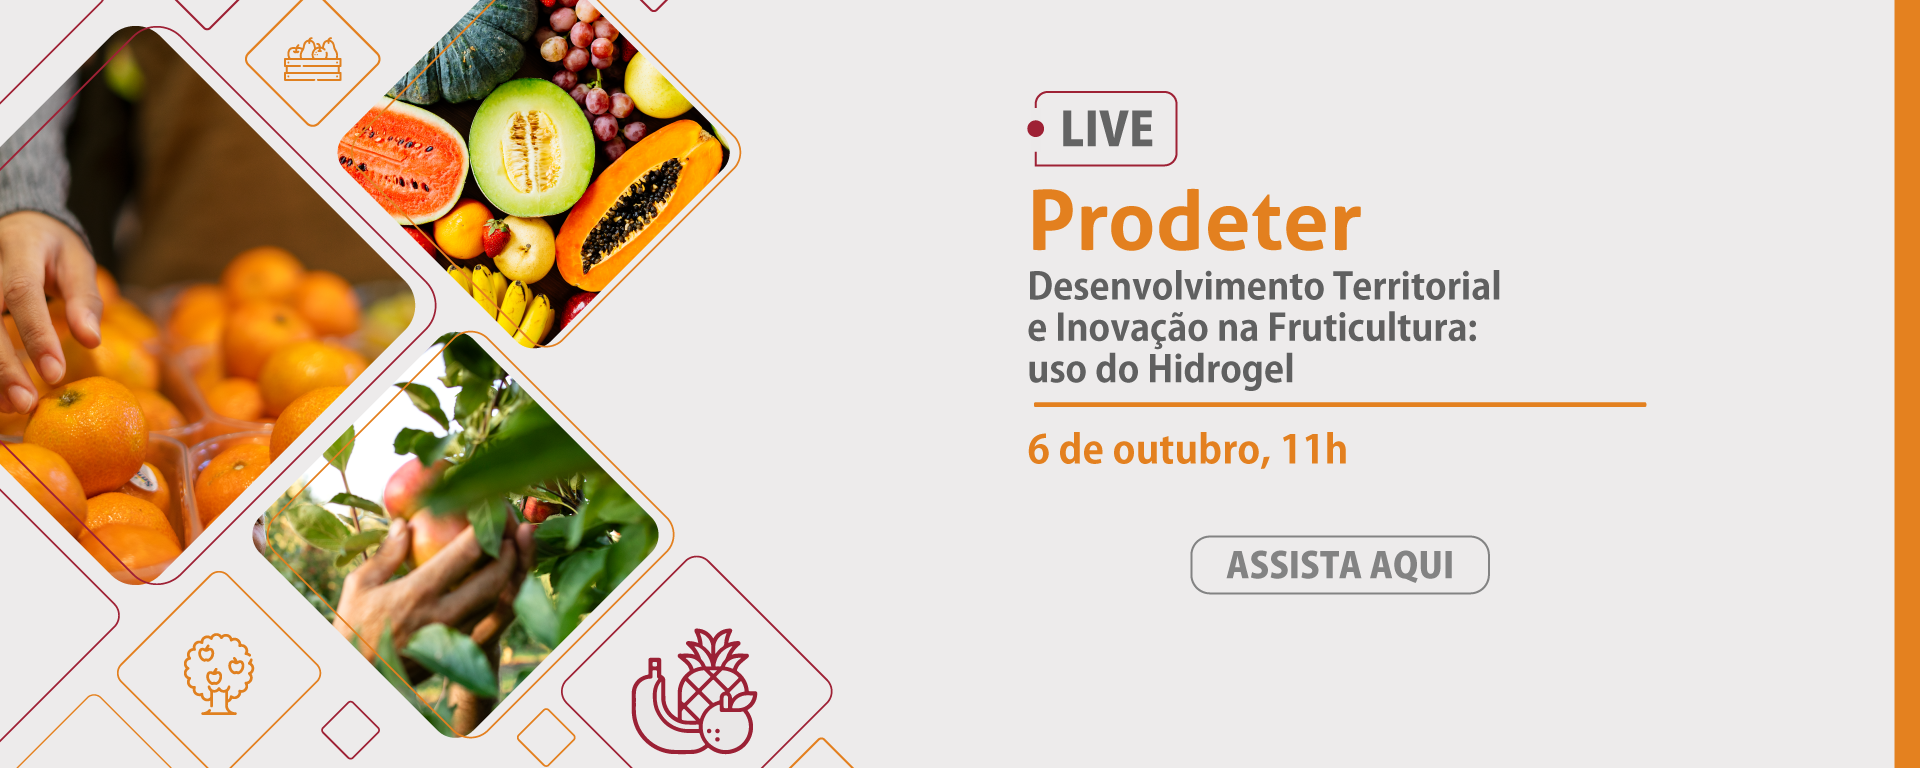 Live Prodeter. Desenvolvimento Territorial e Inovação na Fruticultura: uso do Hidrogel. 6 de outubro, 11h no Canal do Banco do Nordeste no YouTube. Clique e assista!